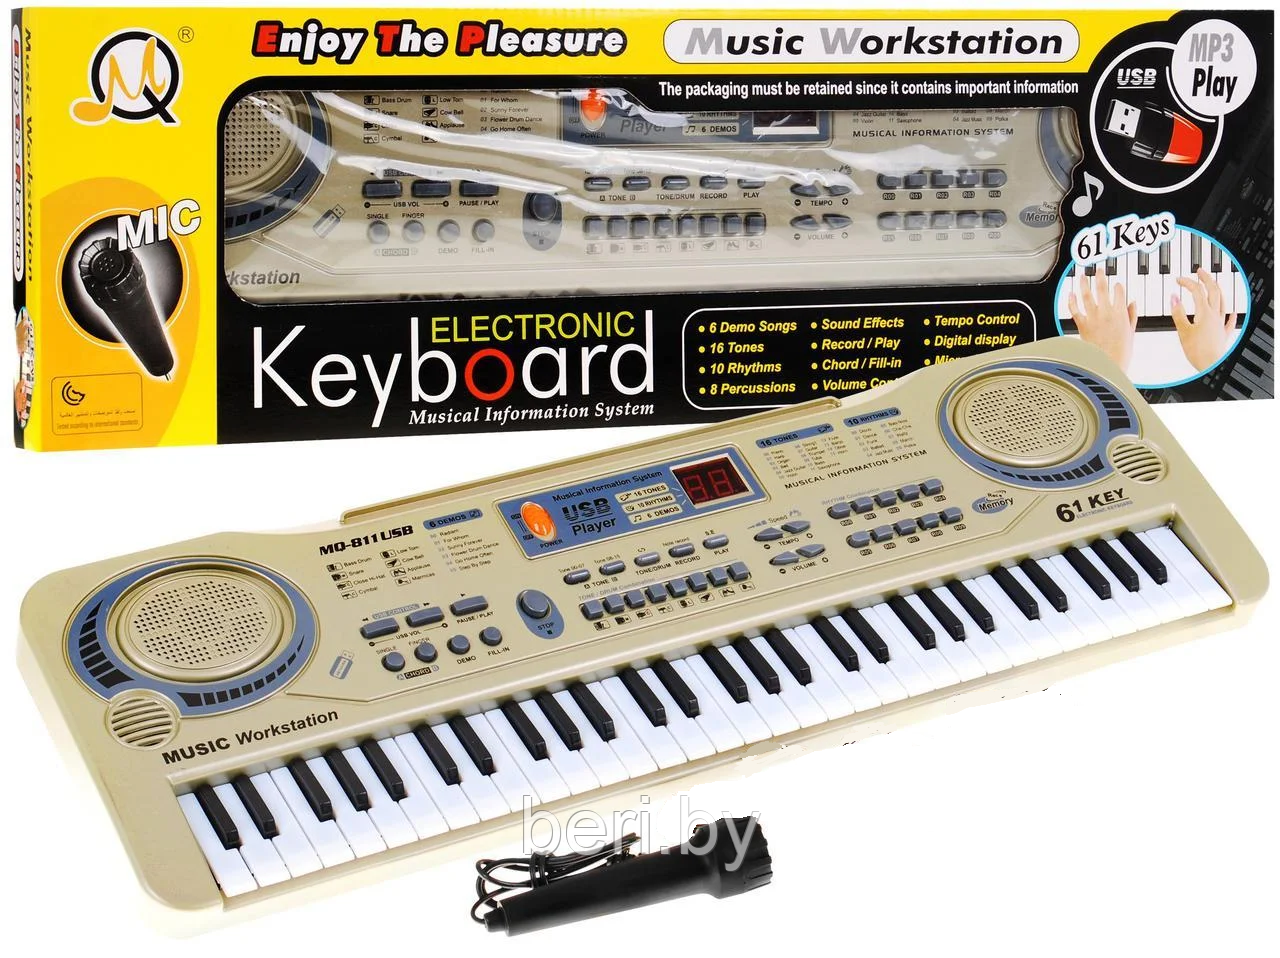 MQ811 USB Синтезатор пианино, 61 клавиша, микрофон, MP3, работает от сети